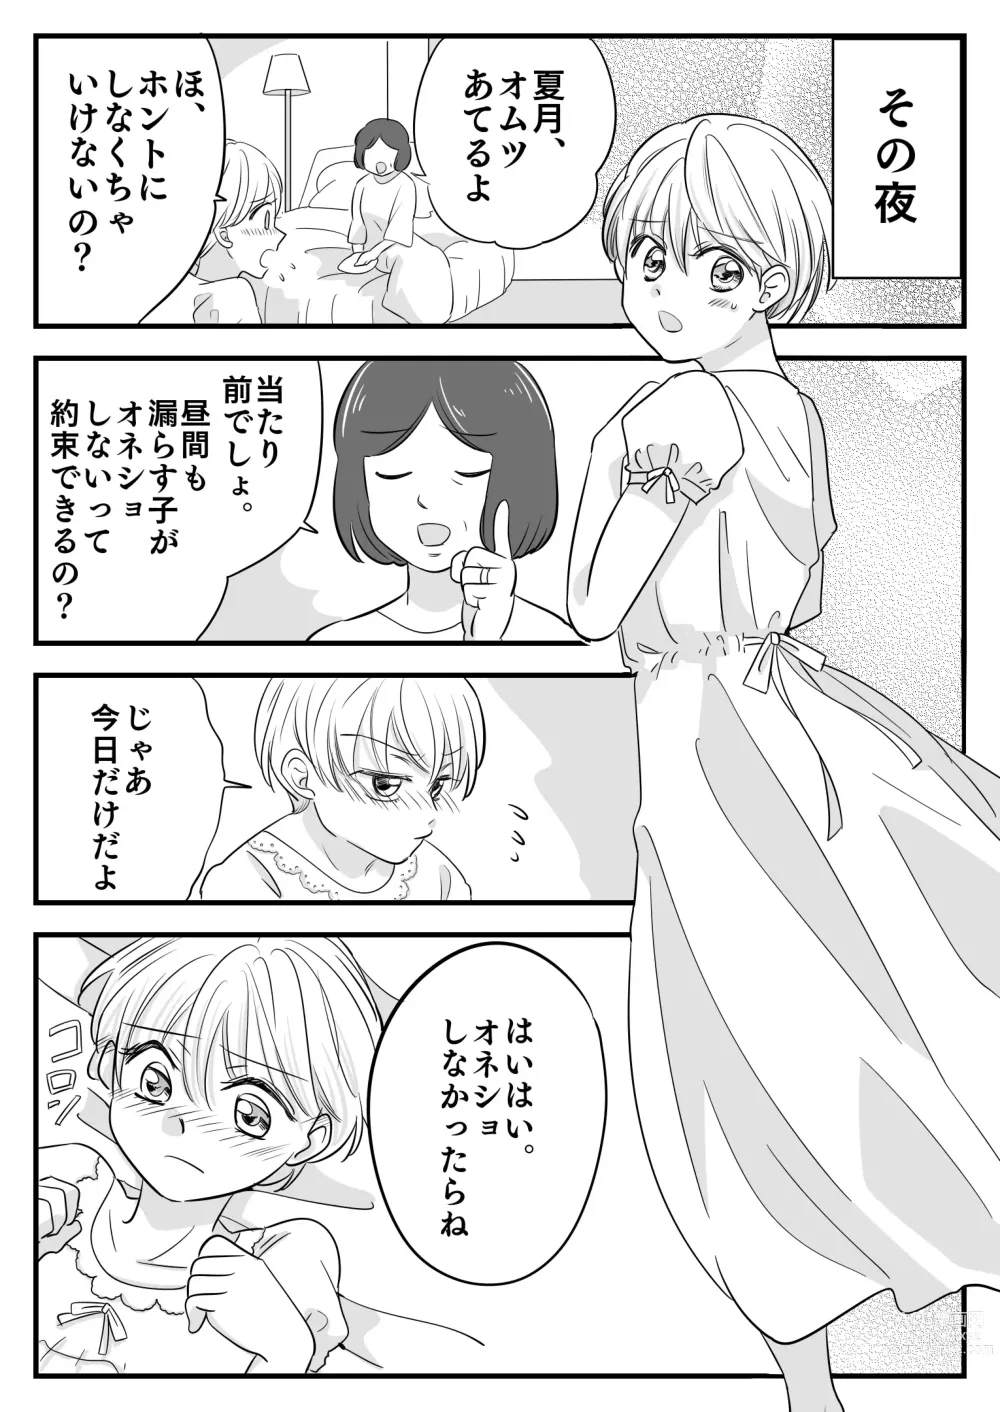 Page 9 of doujinshi Boku no Omutsu Kazoku Ryokou